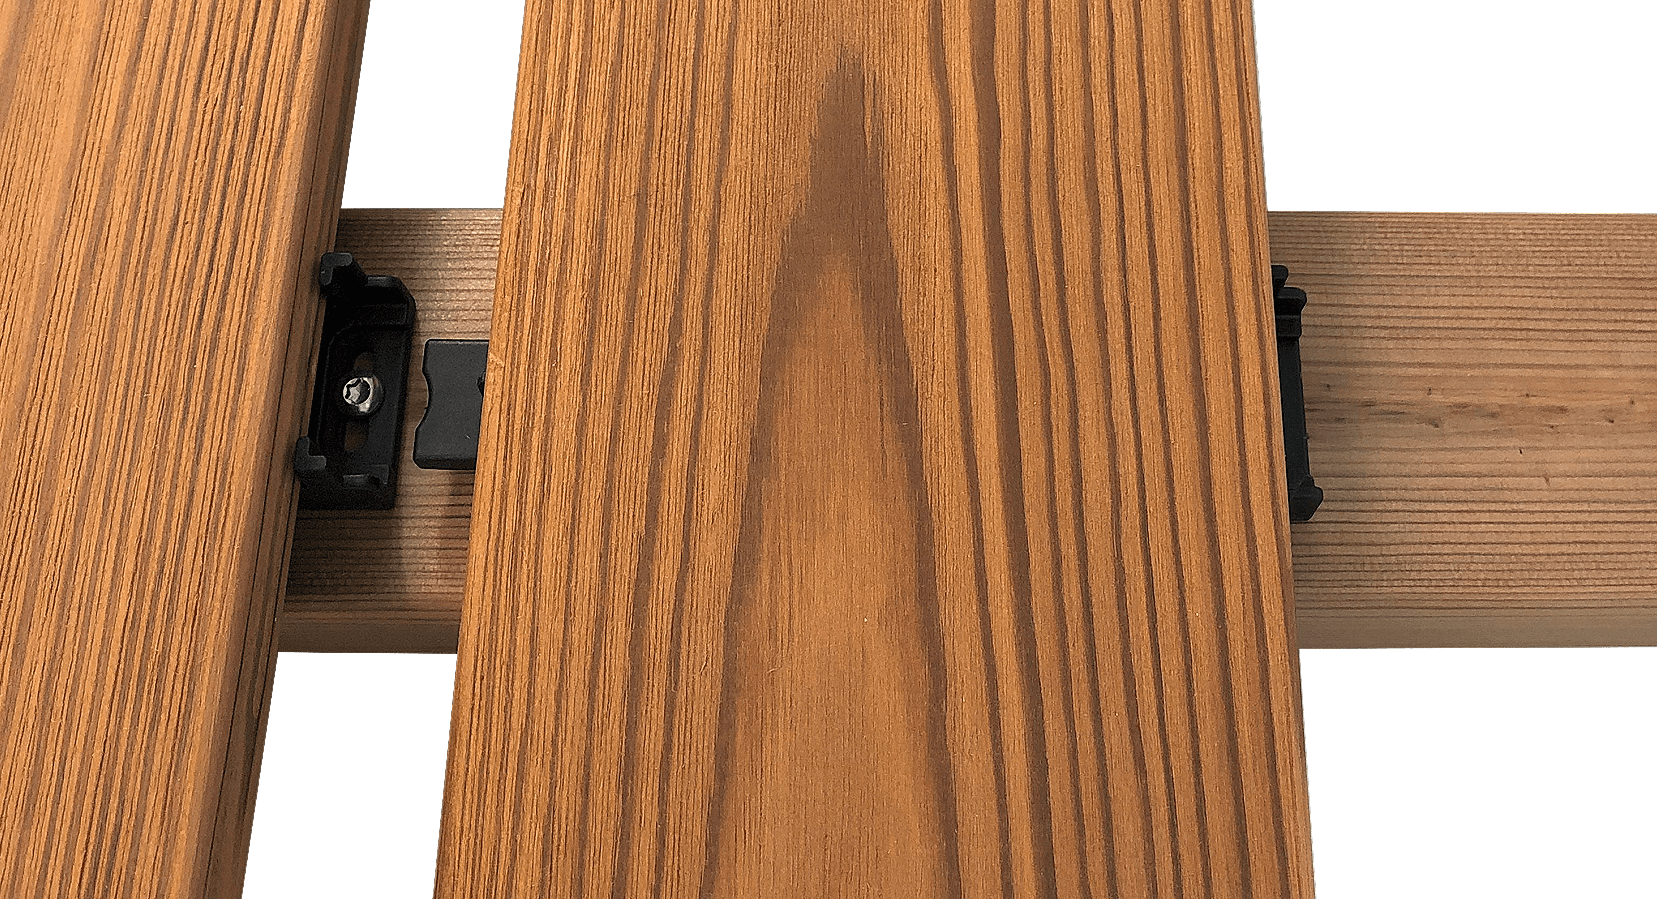 Detailaufnahme des Clippers auf einer Holzunterkonstruktion mit Holzdielen